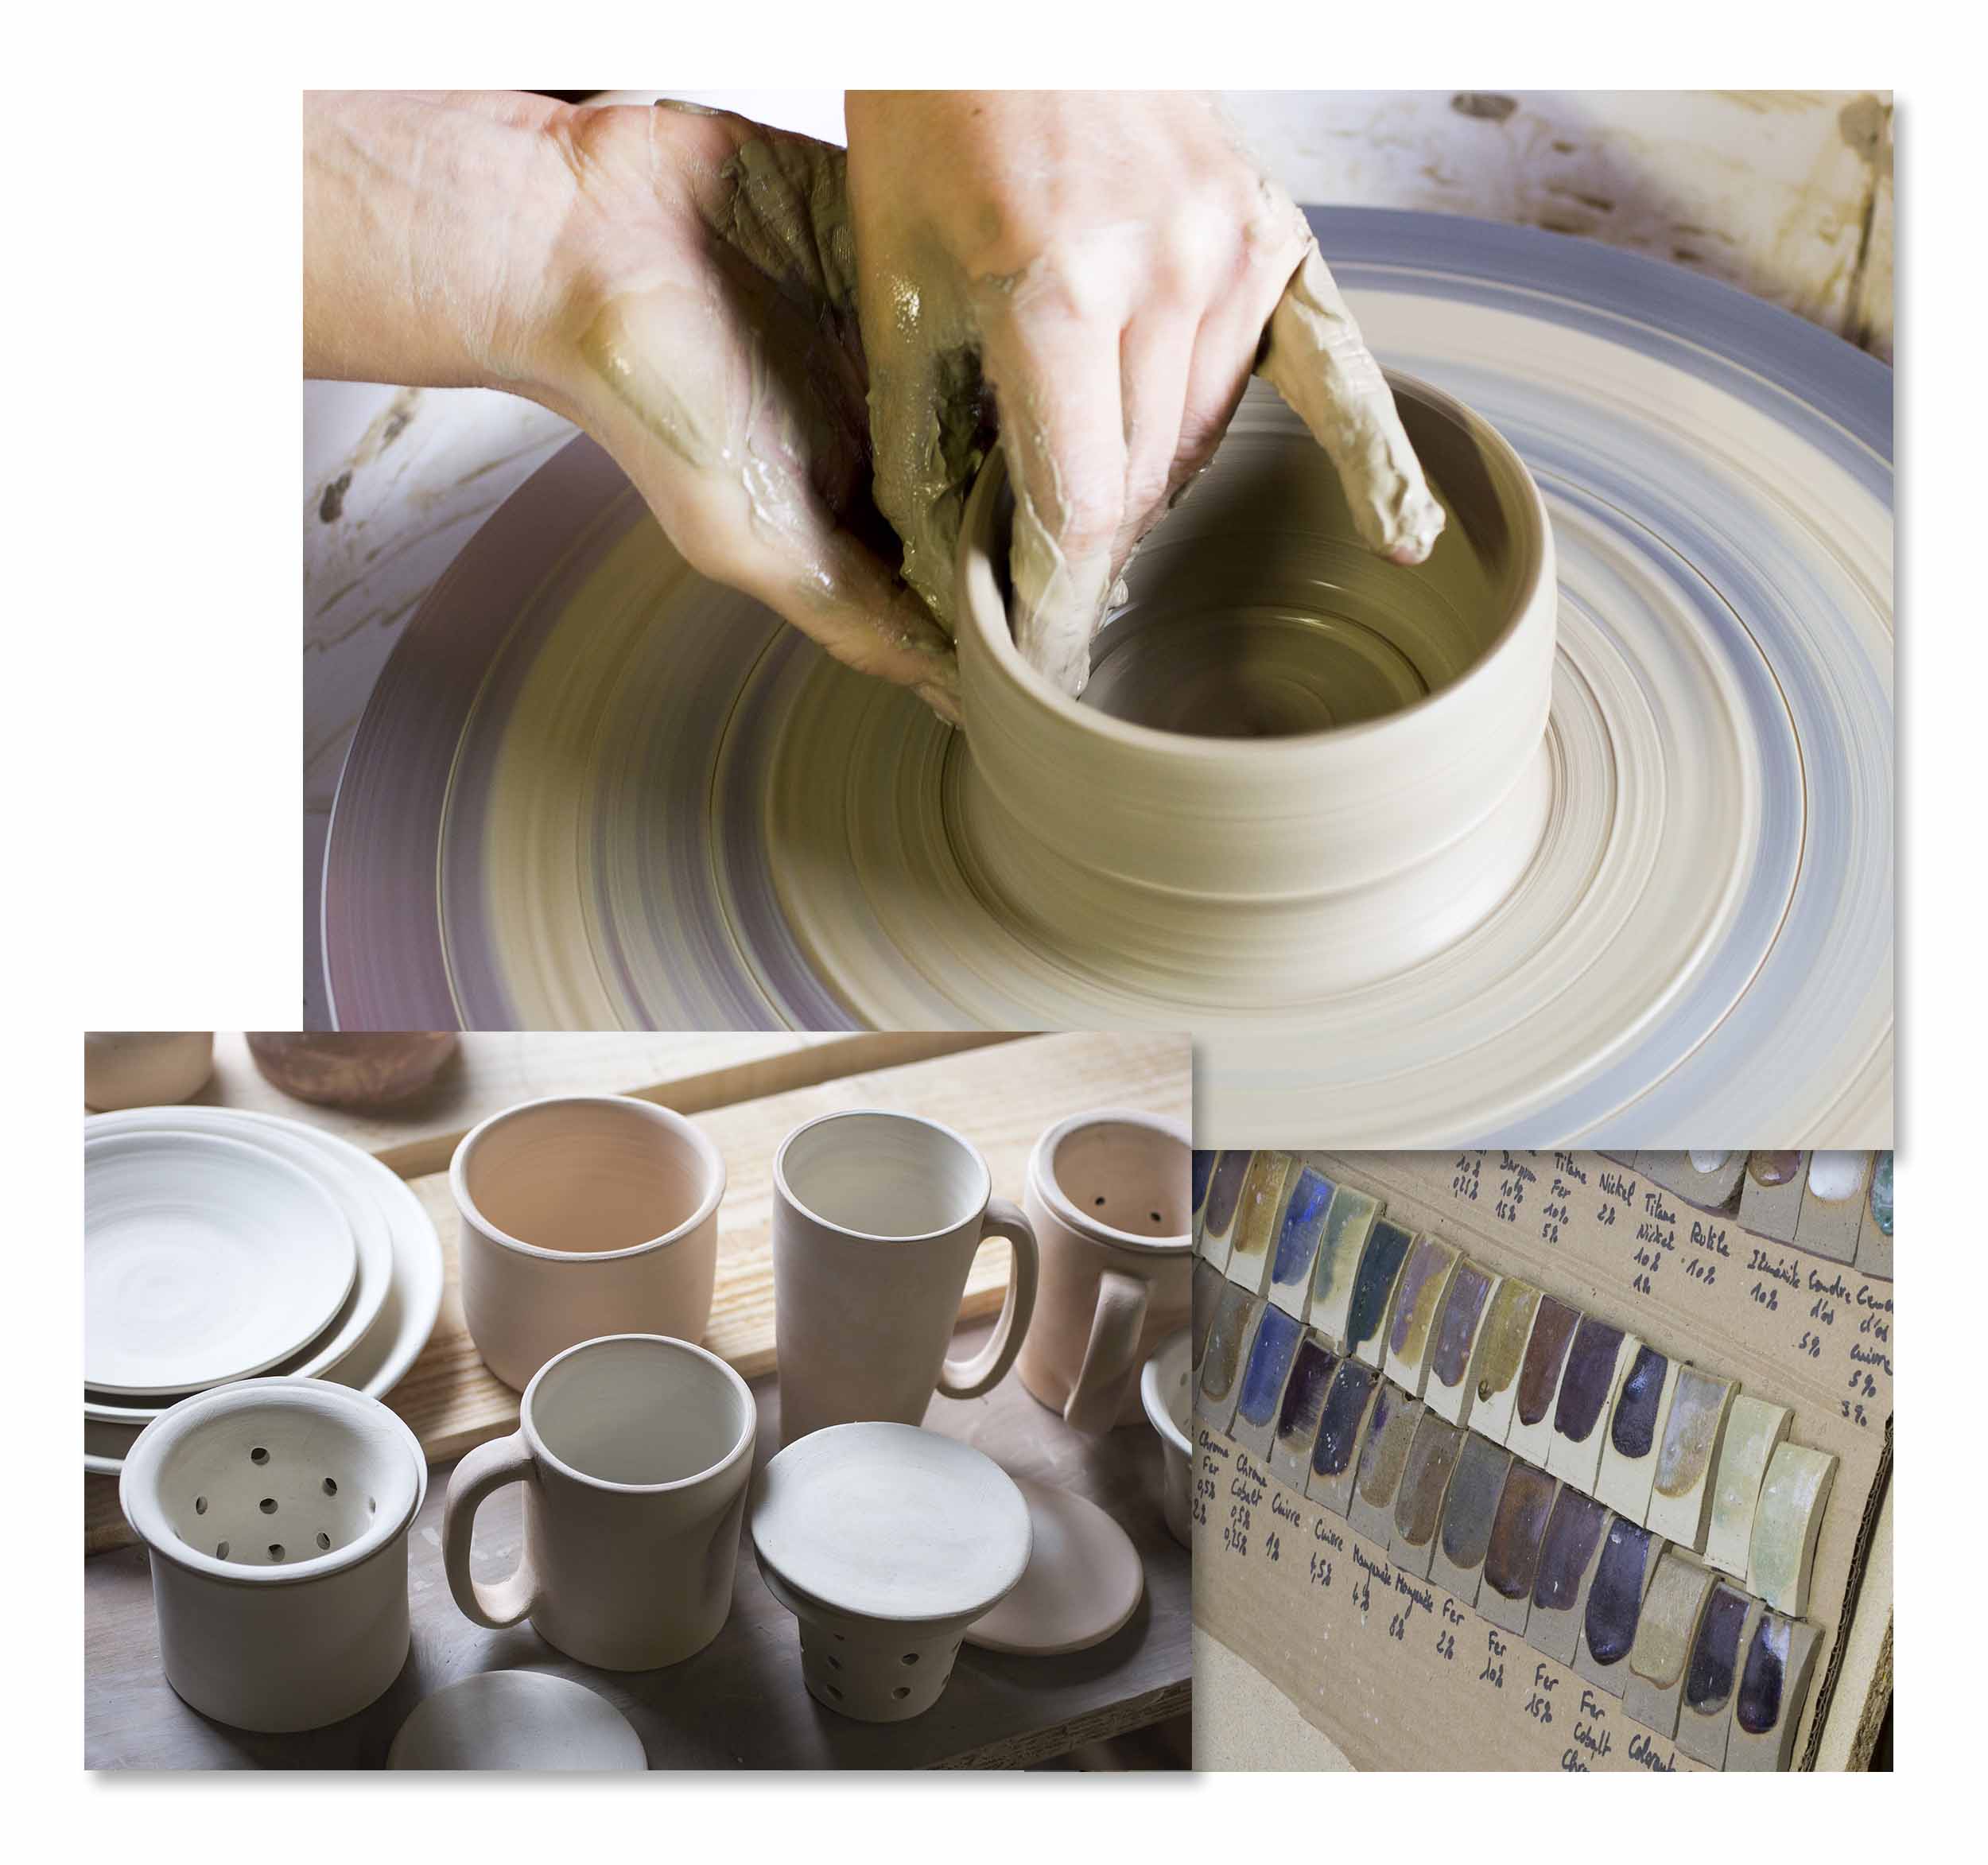 Assemblage de photographies prises dans un atelier de poterie, avec tour et pièces finalisées